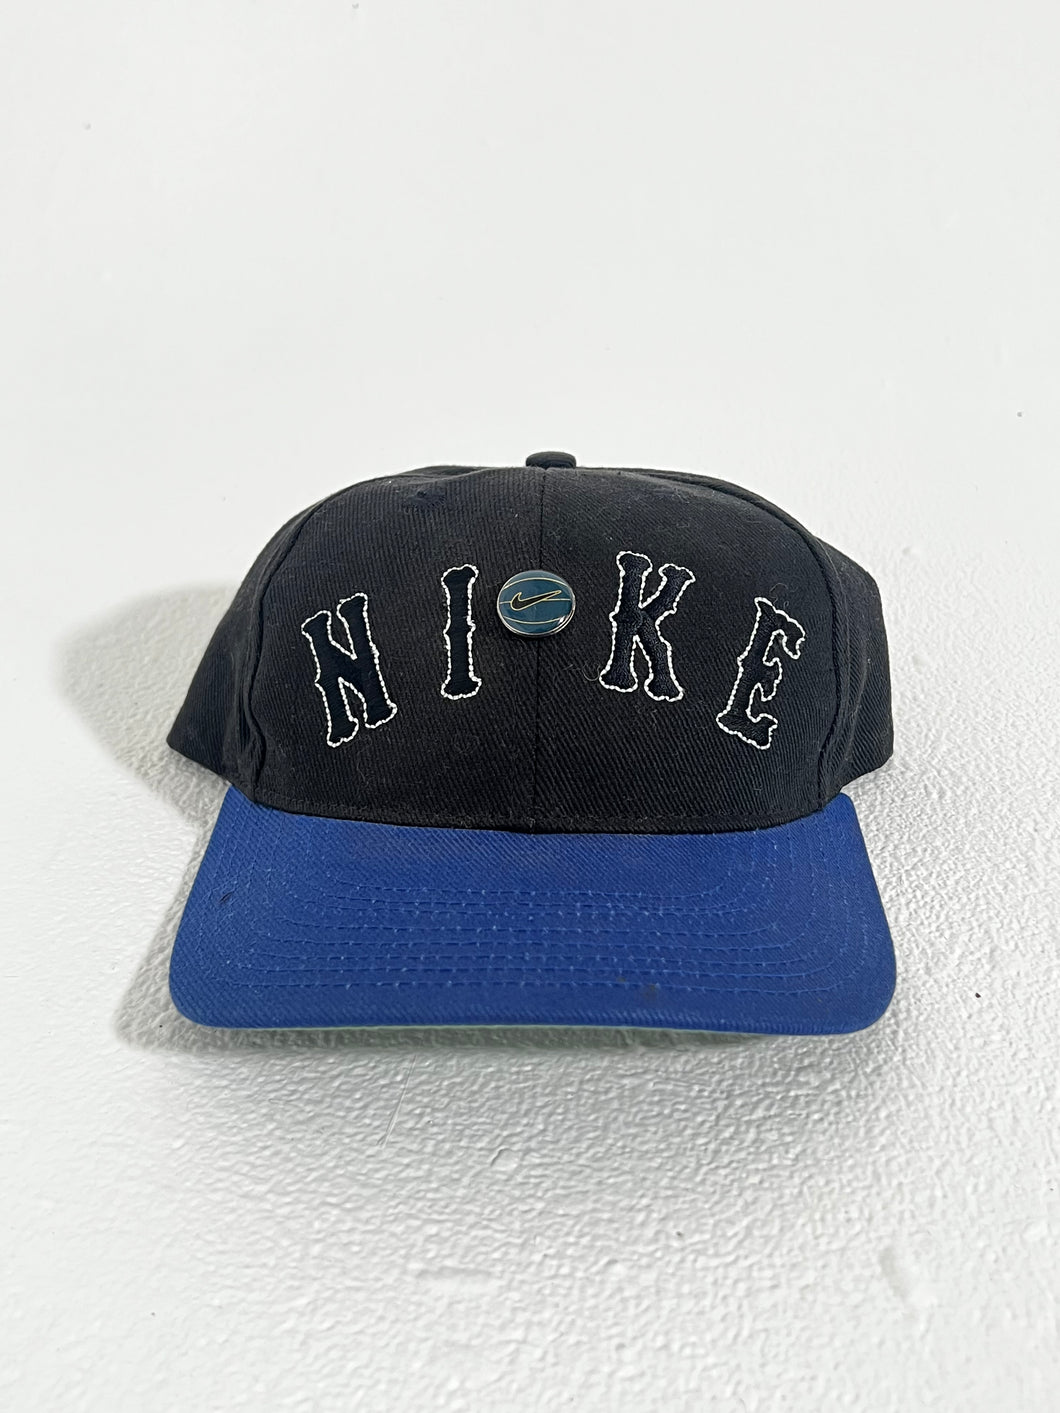 通販日本 Vintage Nike hat - 帽子